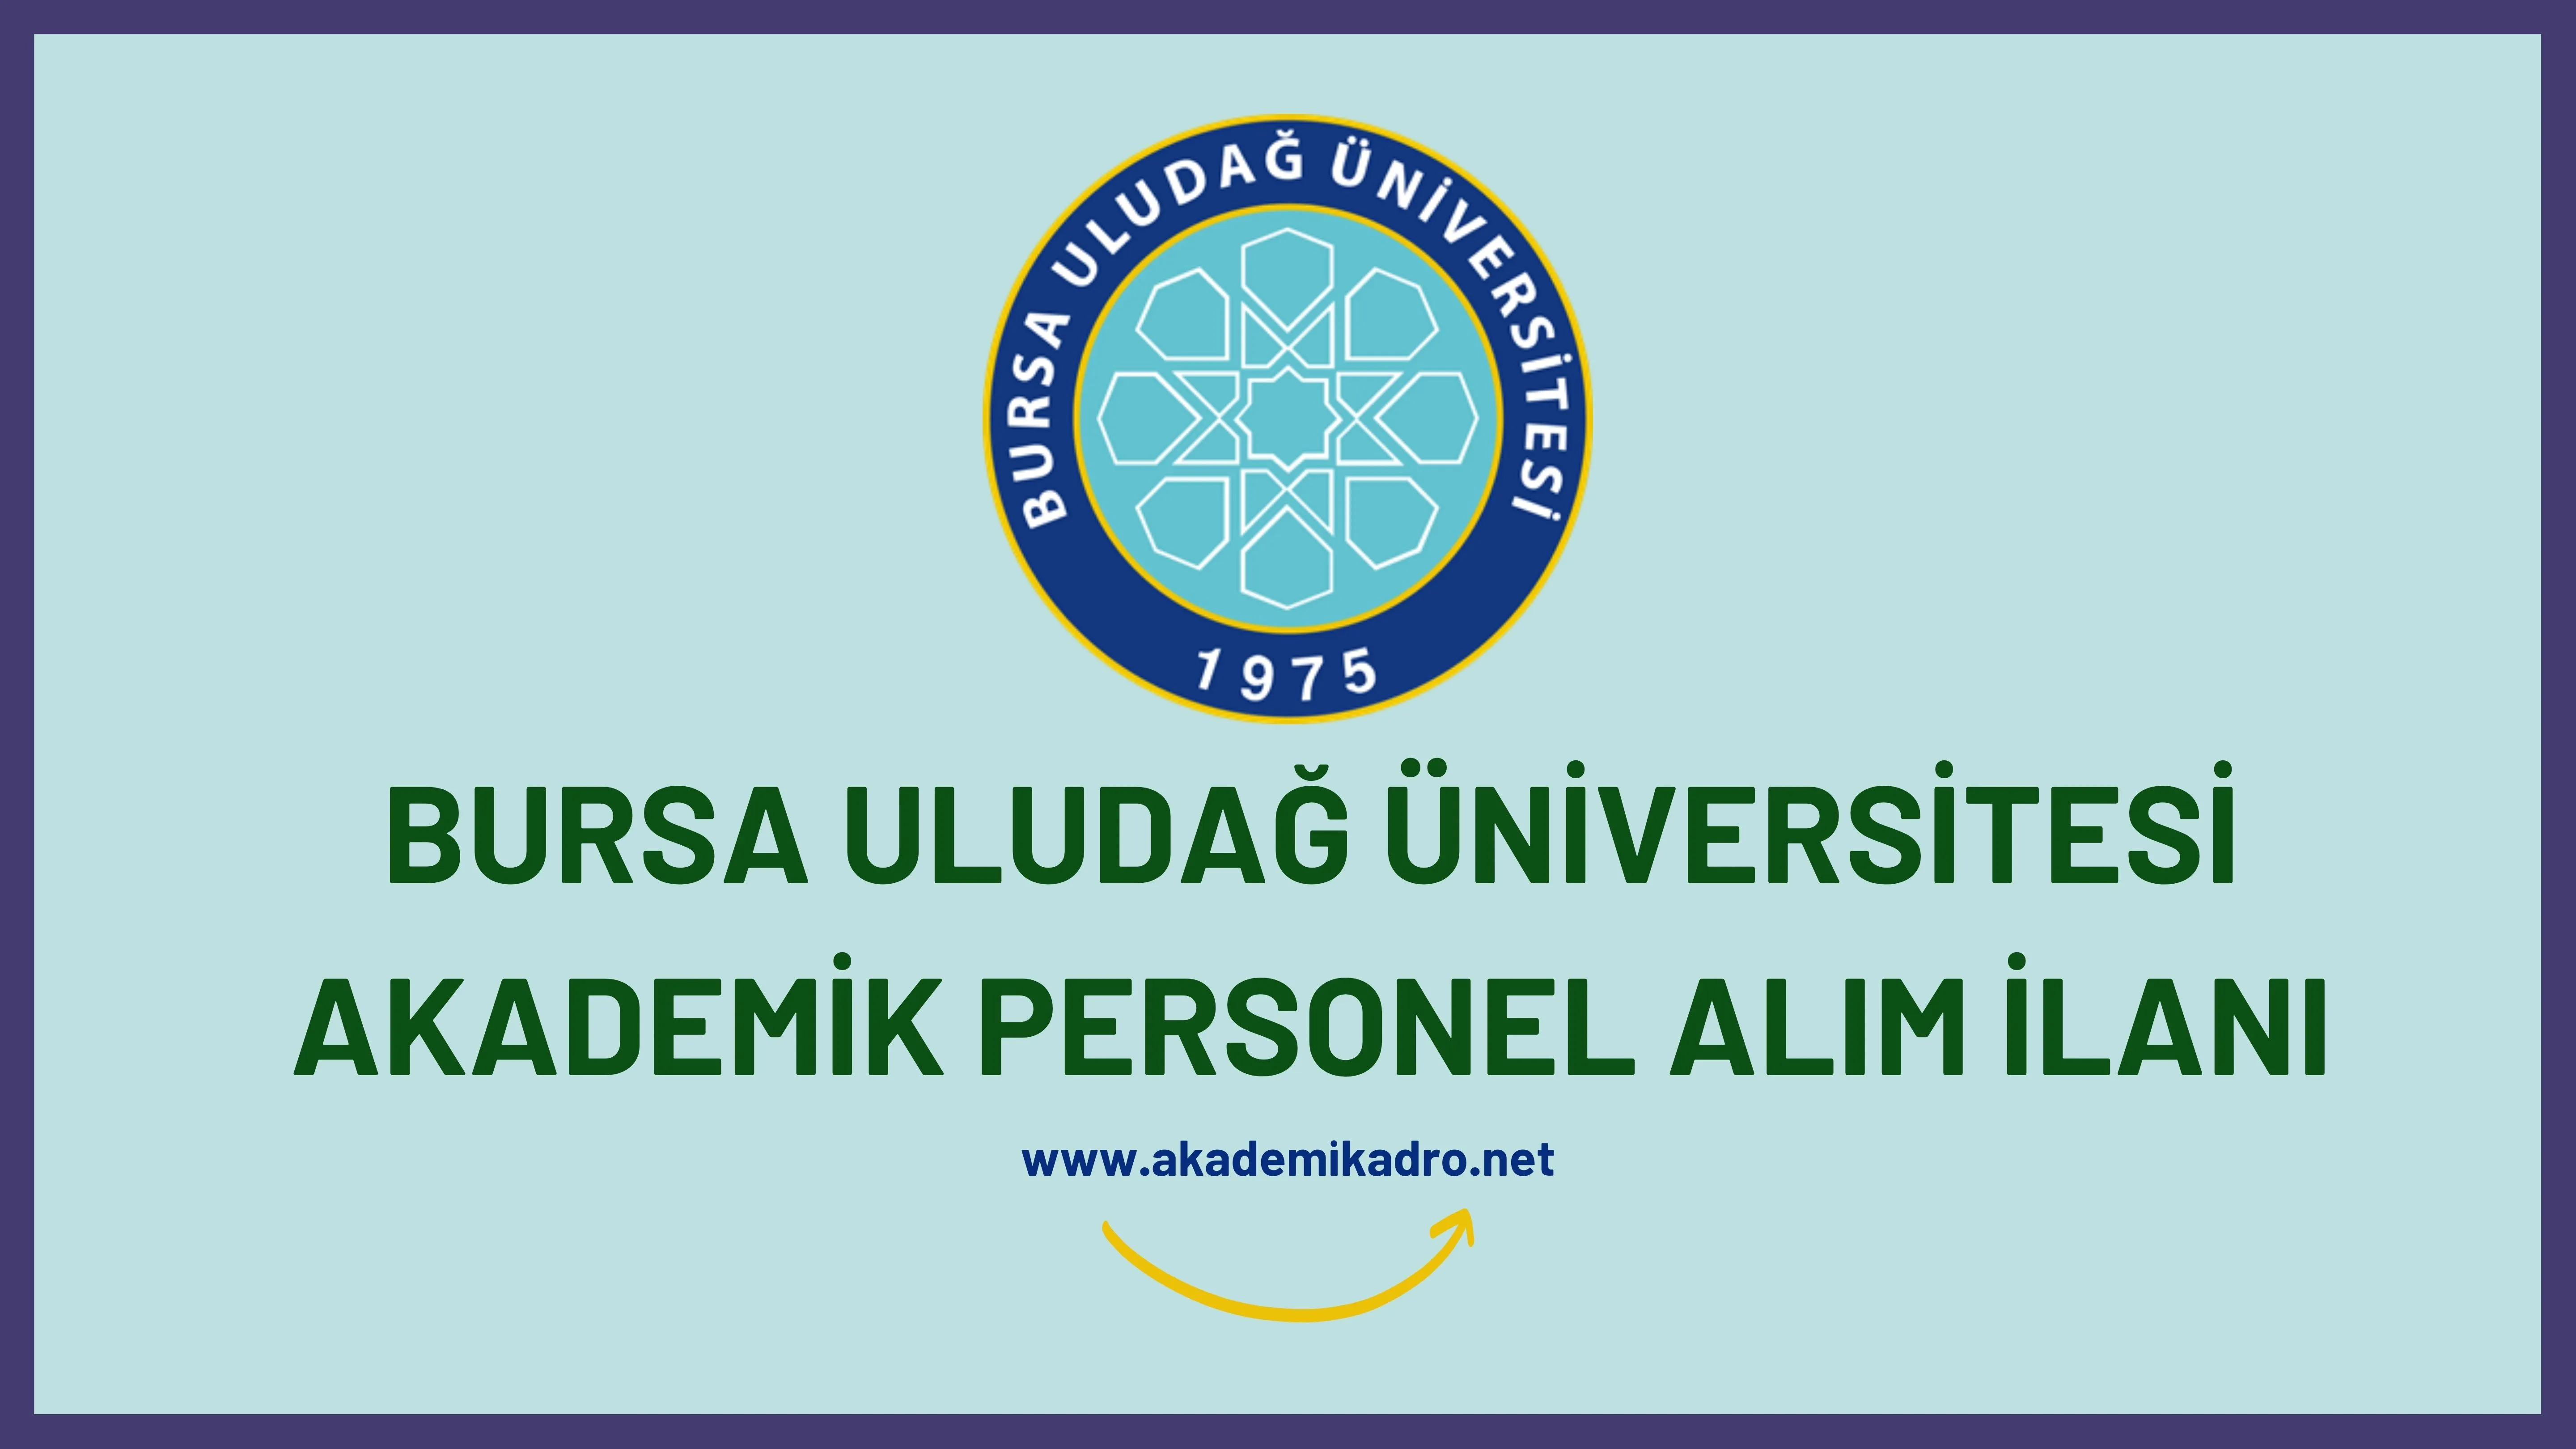 Bursa Uludağ Üniversitesi birçok alandan 47 öğretim üyesi alacak.